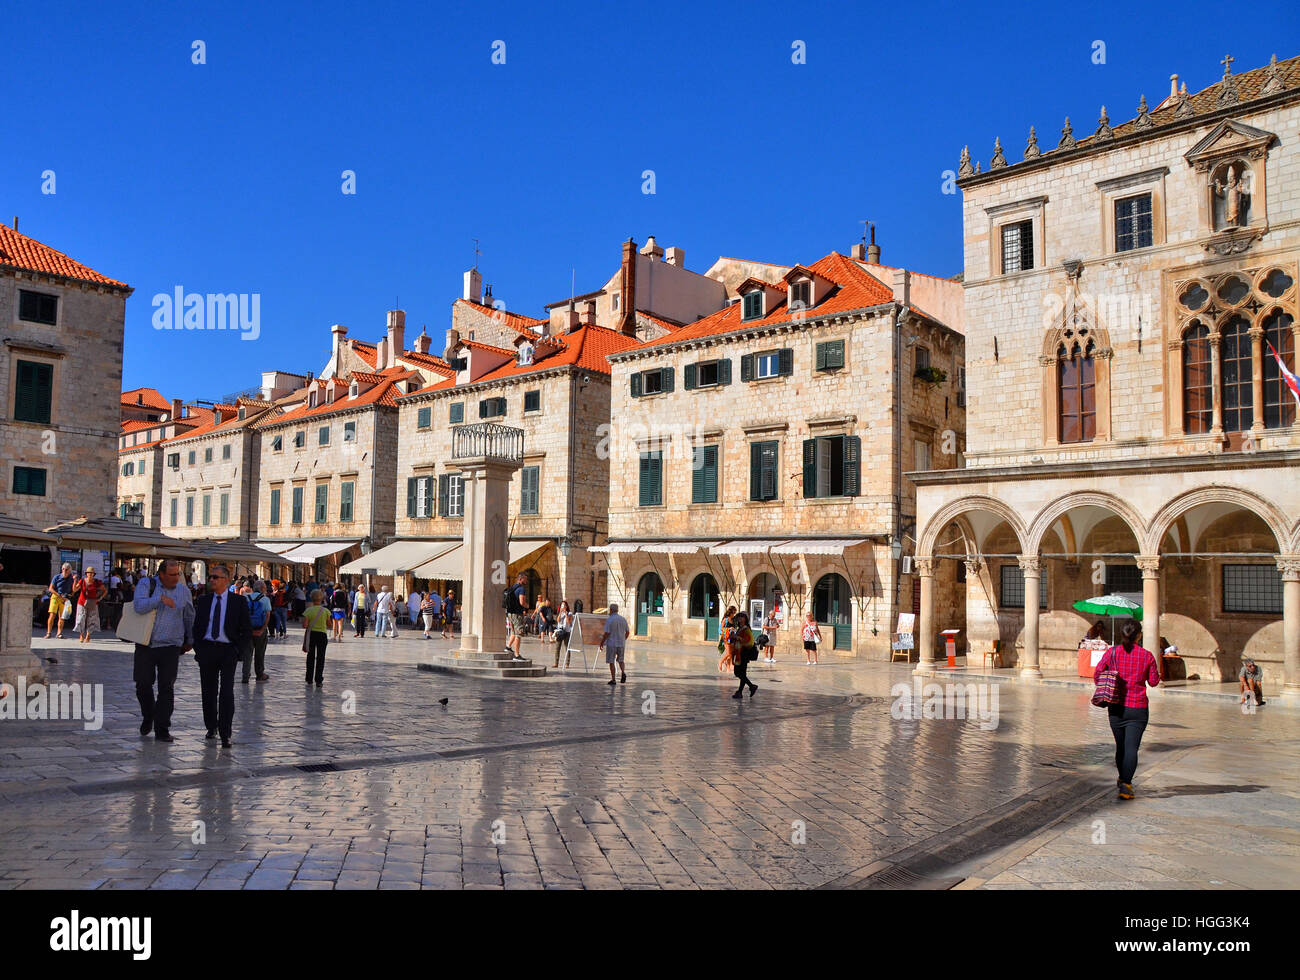 Placa / - Stradun, la rue principale de la vieille ville fortifiée de Dubrovnik. Banque D'Images